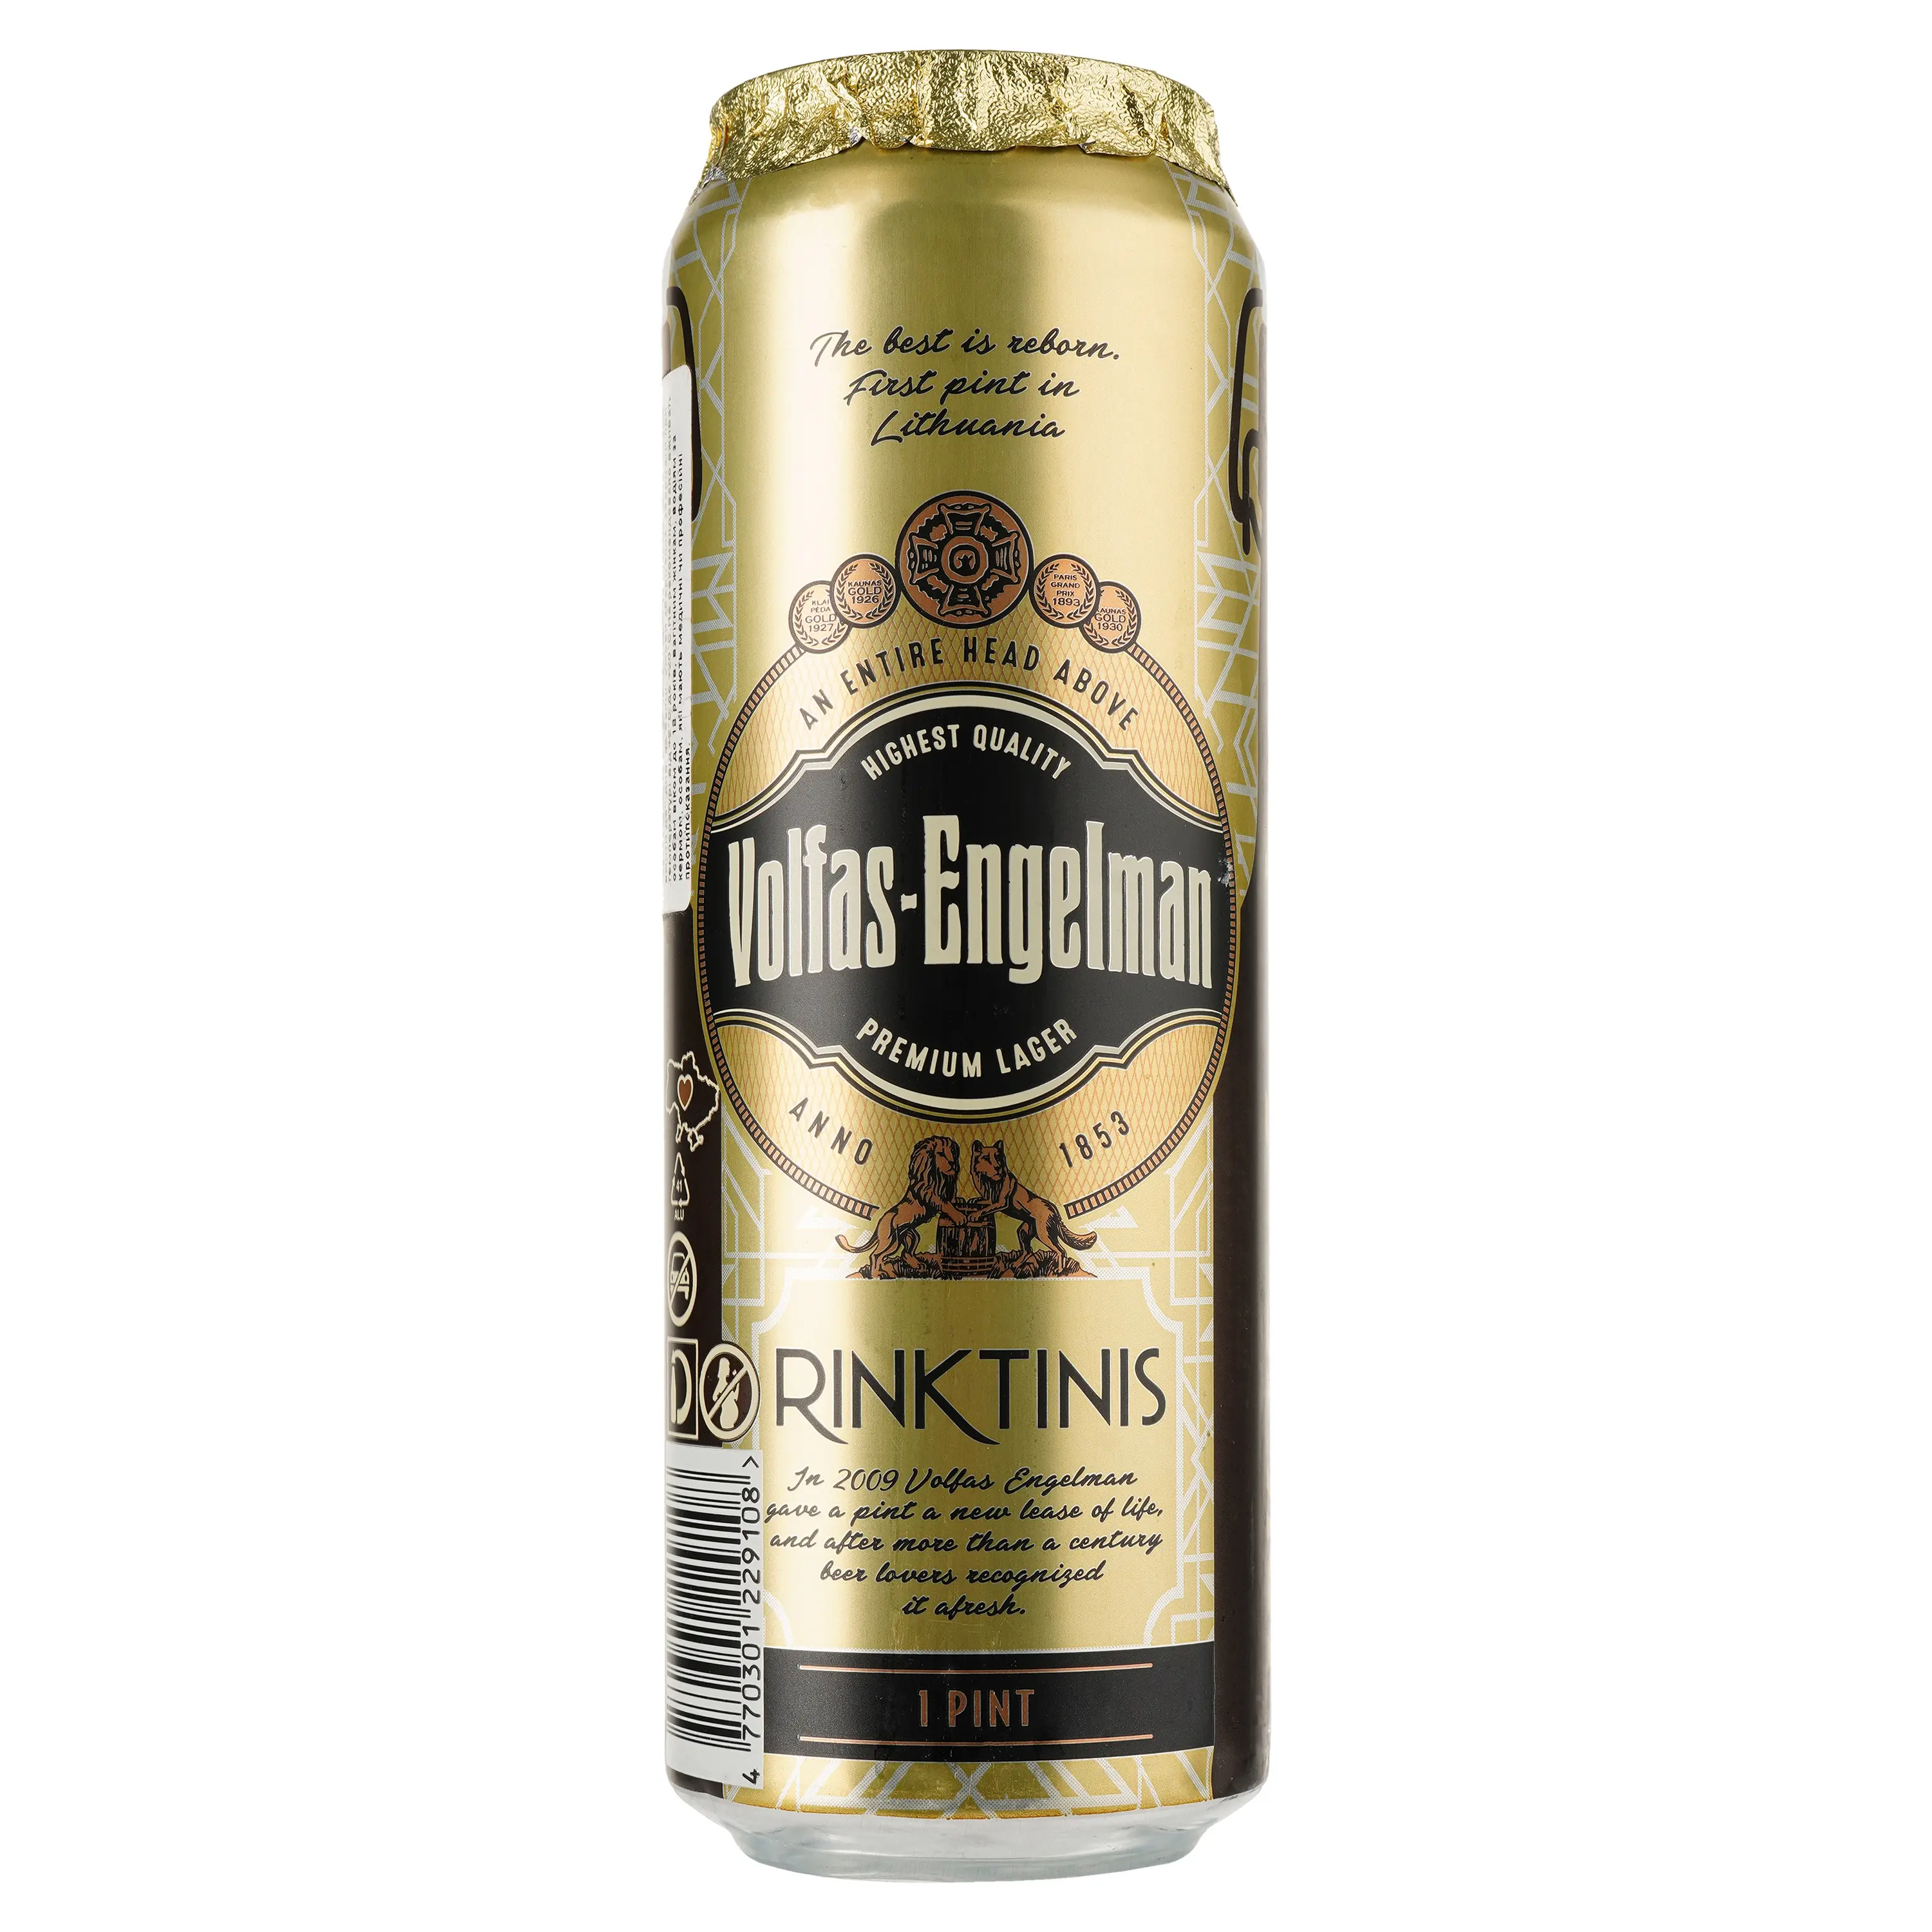 Пиво Volfas Engelman Rinktinis світле 5.2% 6 шт. х 0.5 л з/б - фото 2